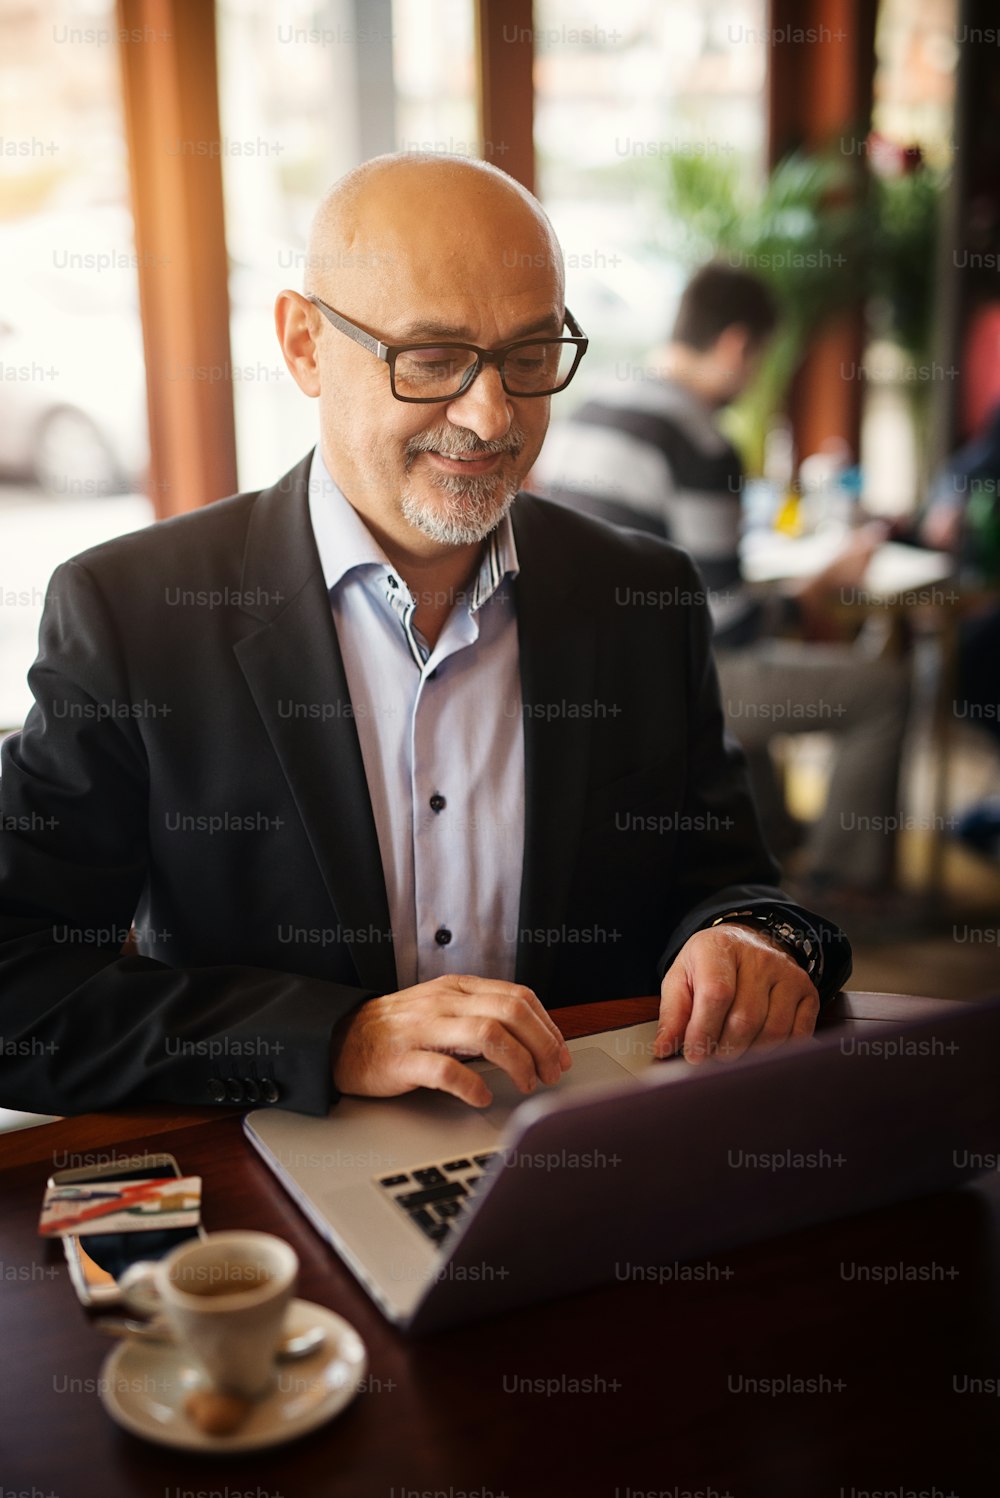 El hombre de negocios maduro y feliz está contento con lo que ve en su computadora portátil mientras está sentado en una cafetería.